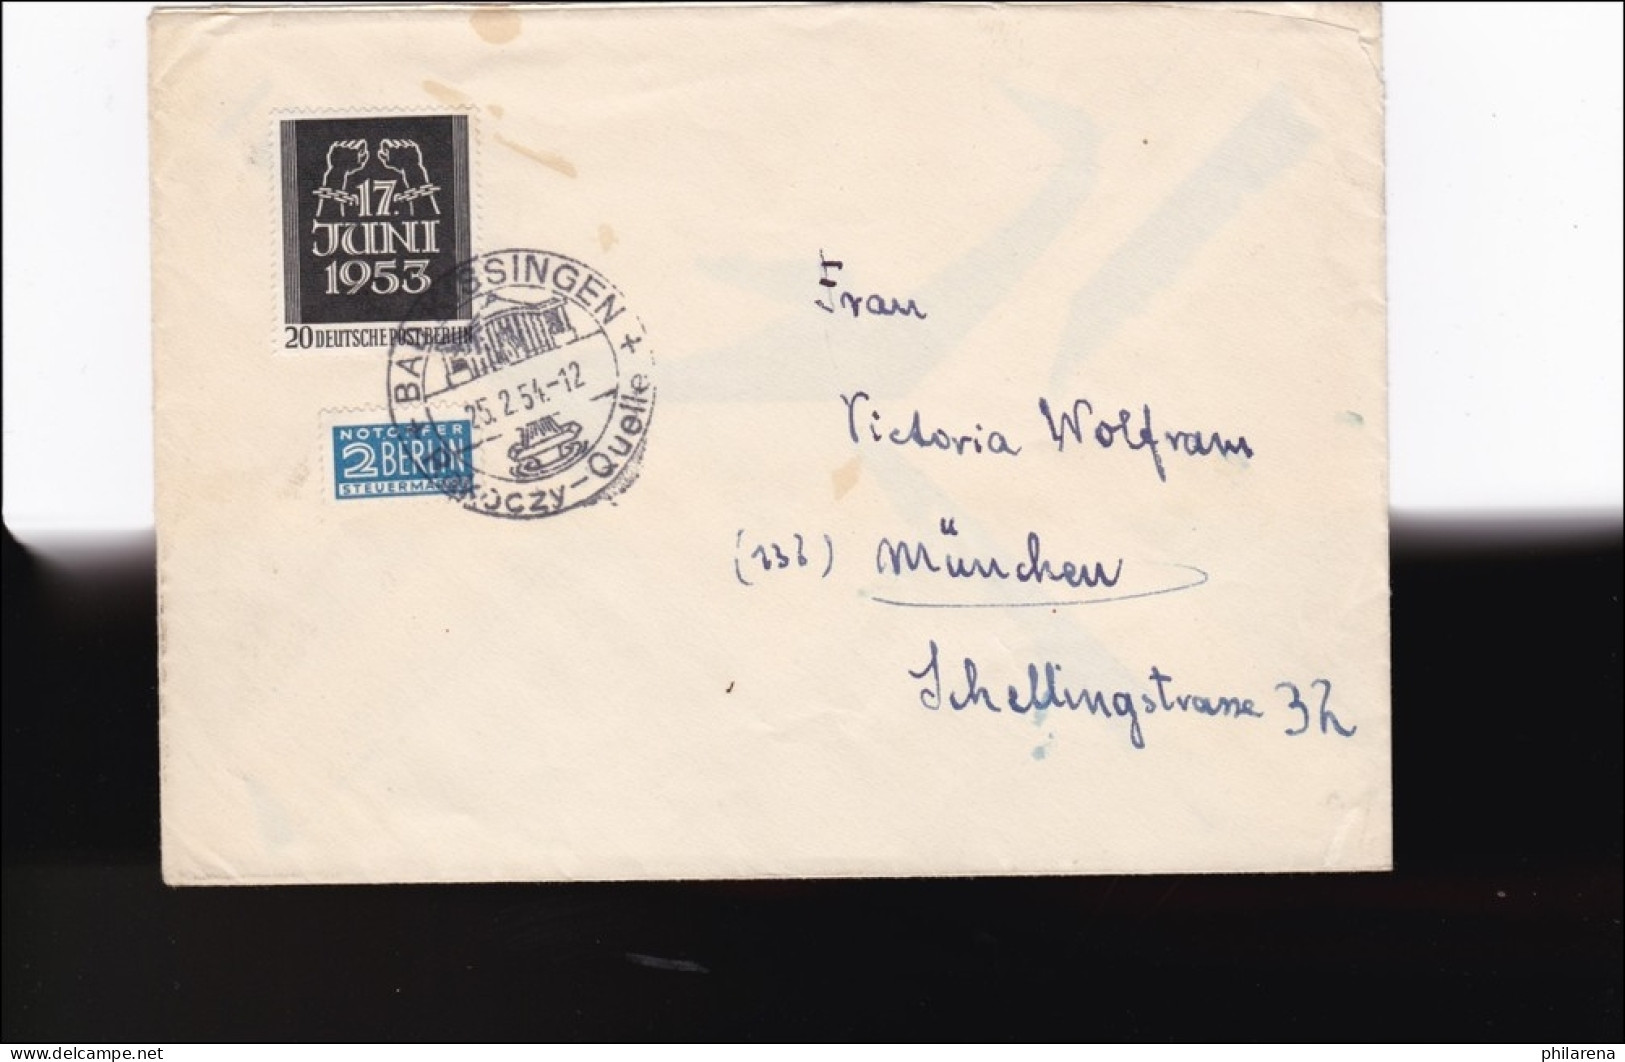 Brief 1954 Nach München  Aus Bad Kissingen - Storia Postale